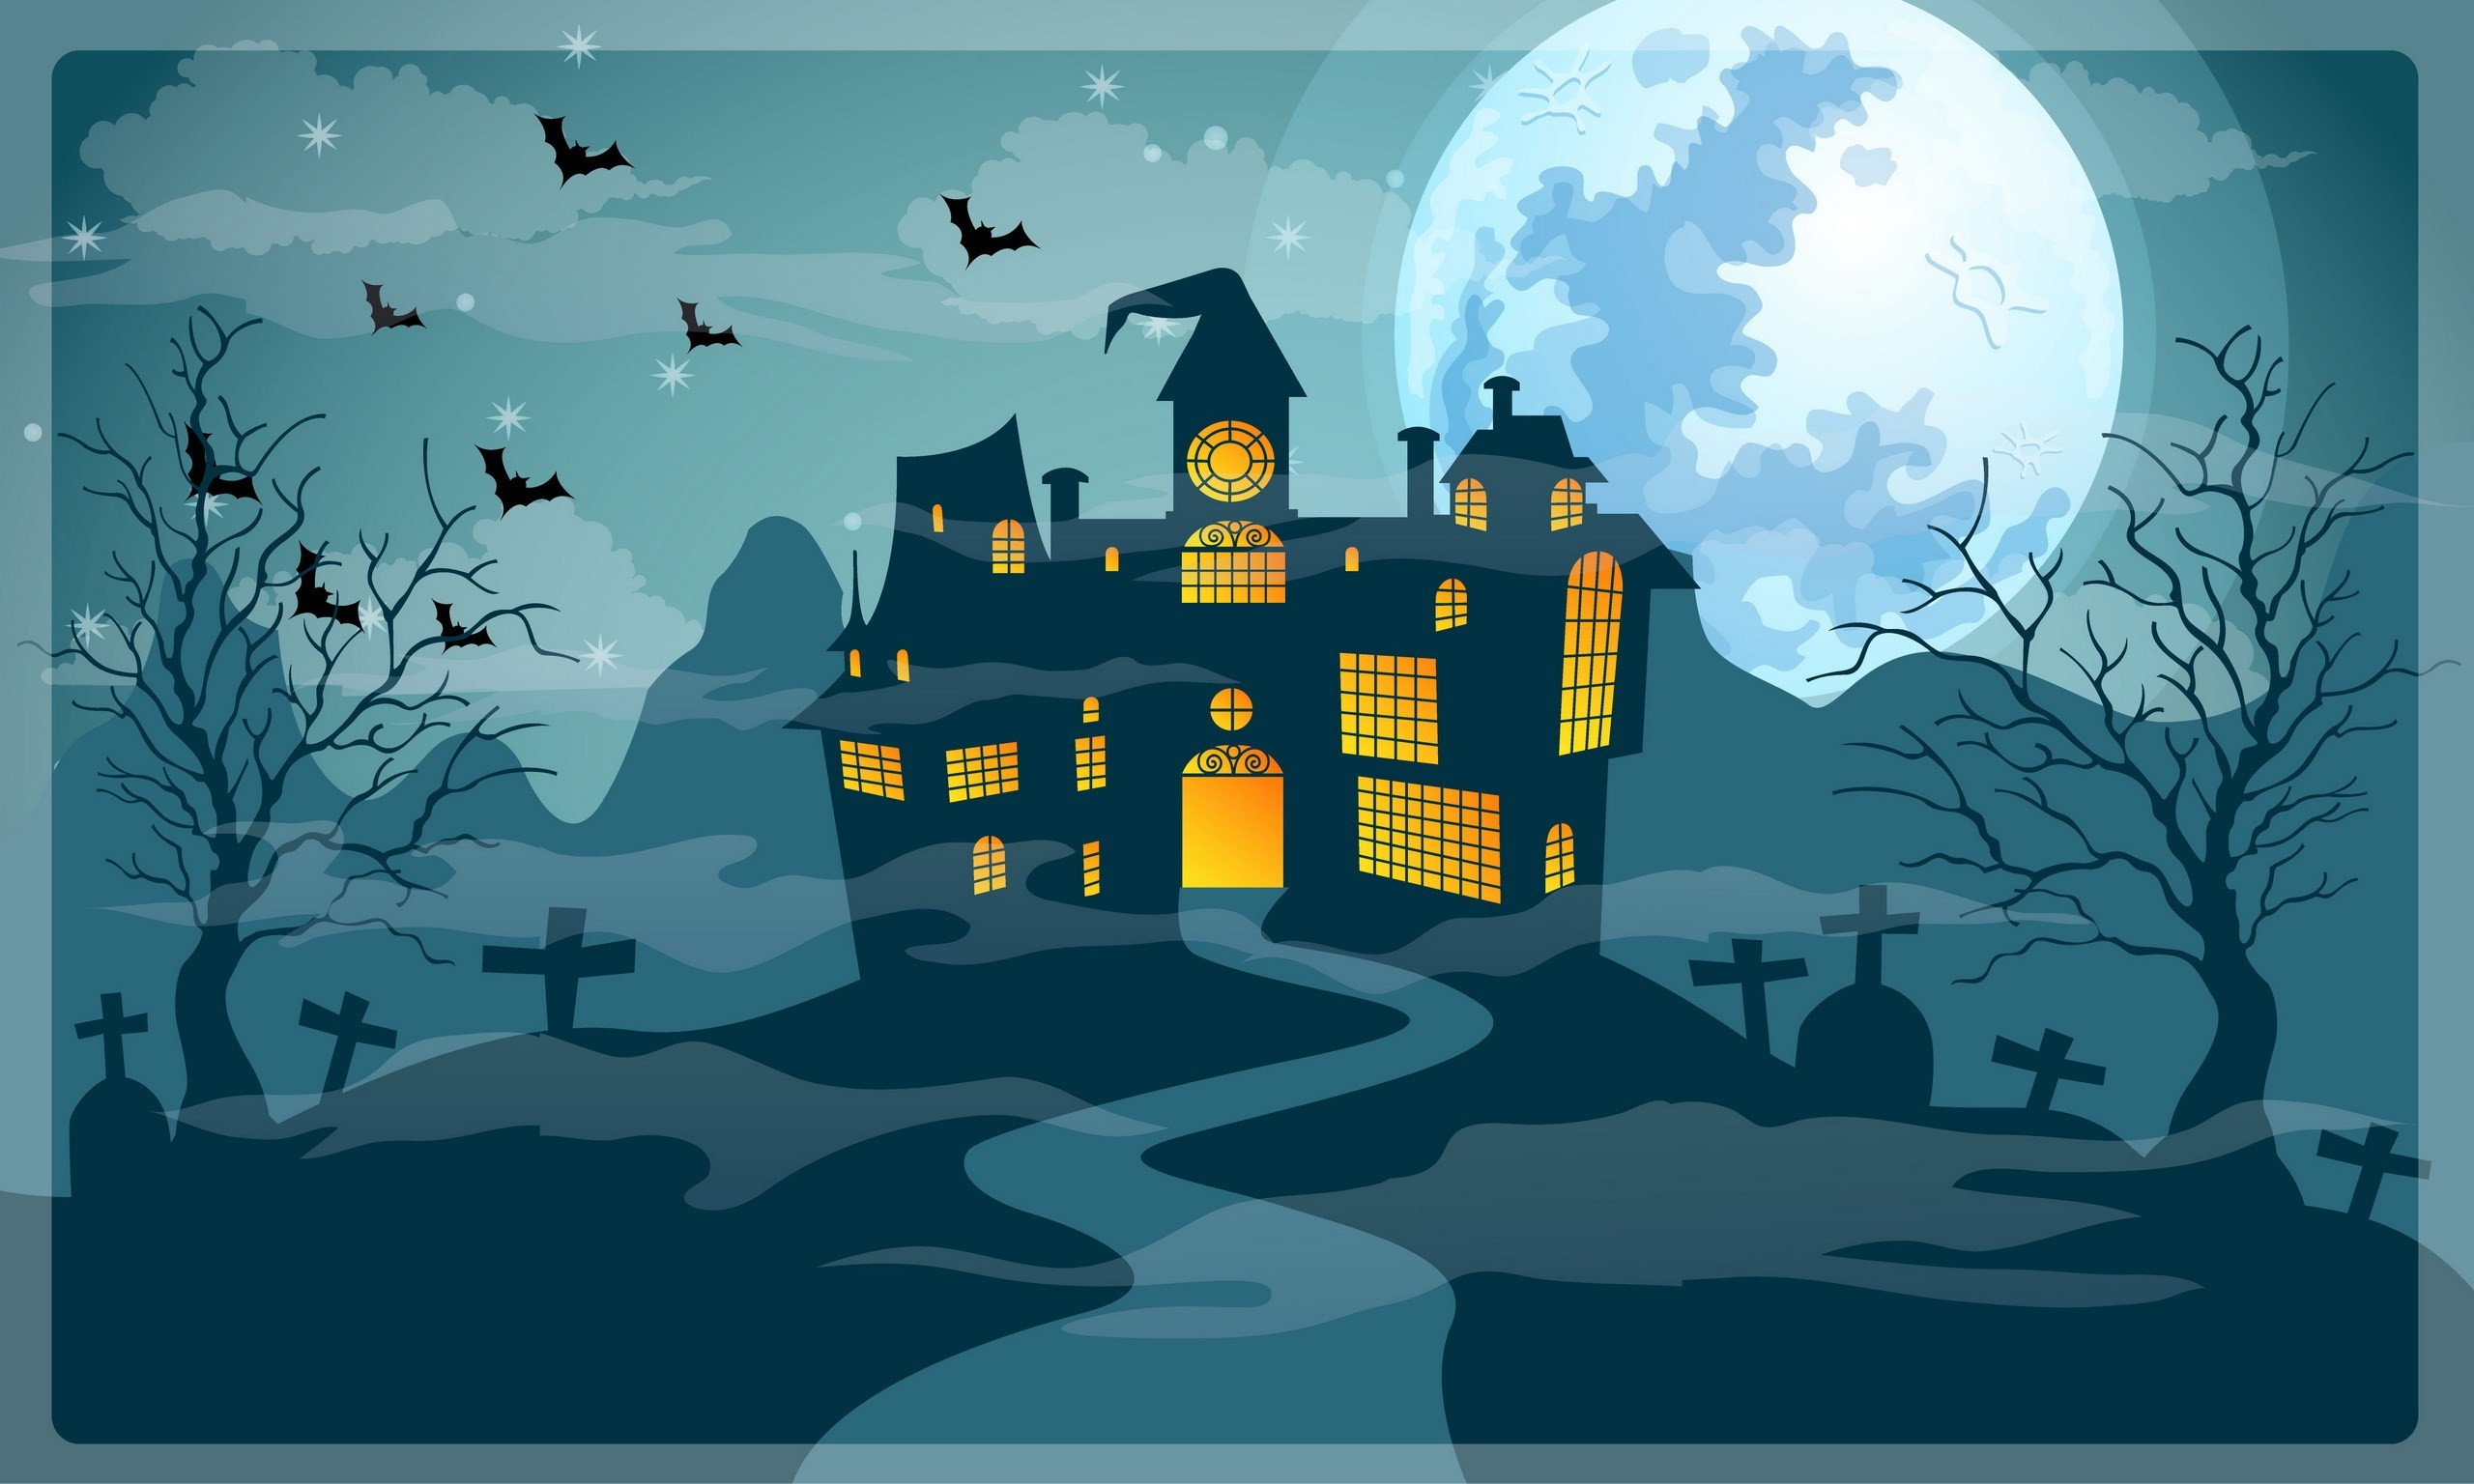 2560x1536 Related to halloween desktop nexus wallpaper  images:   free download pictures of halloween